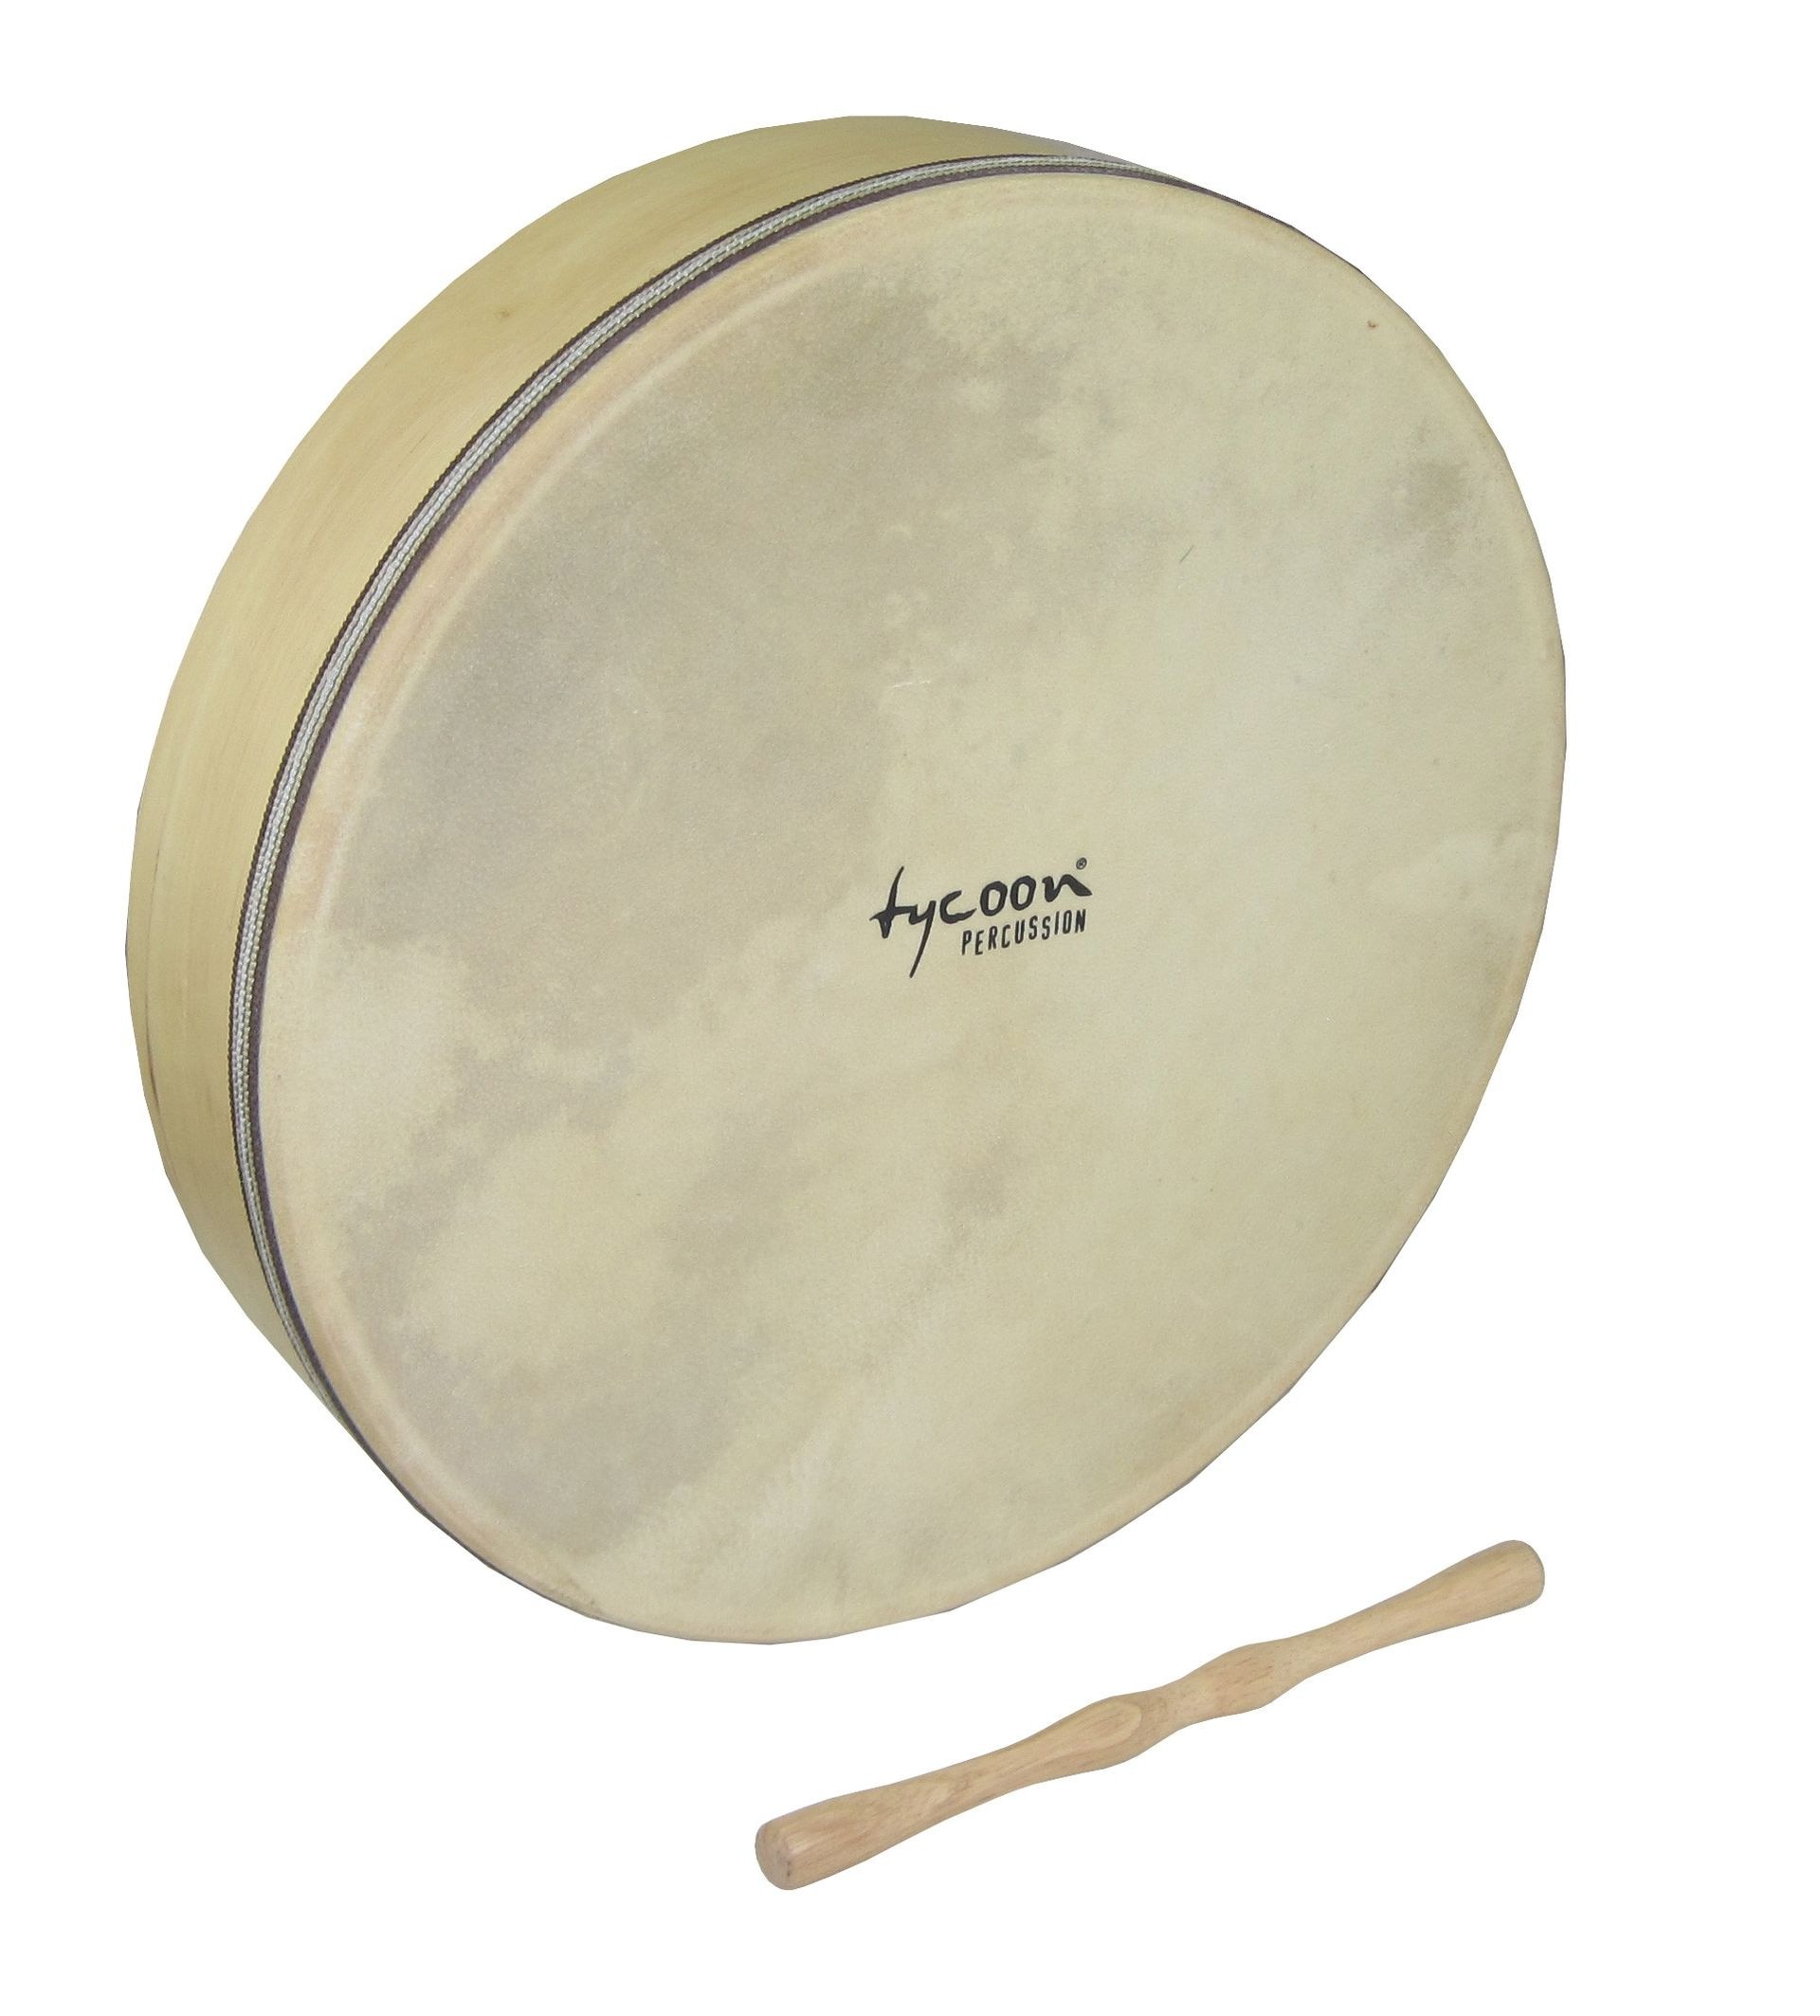 TYCOON TBFD-16 - Рамочный барабан (бубен) 16"(41см), цвет натуральный